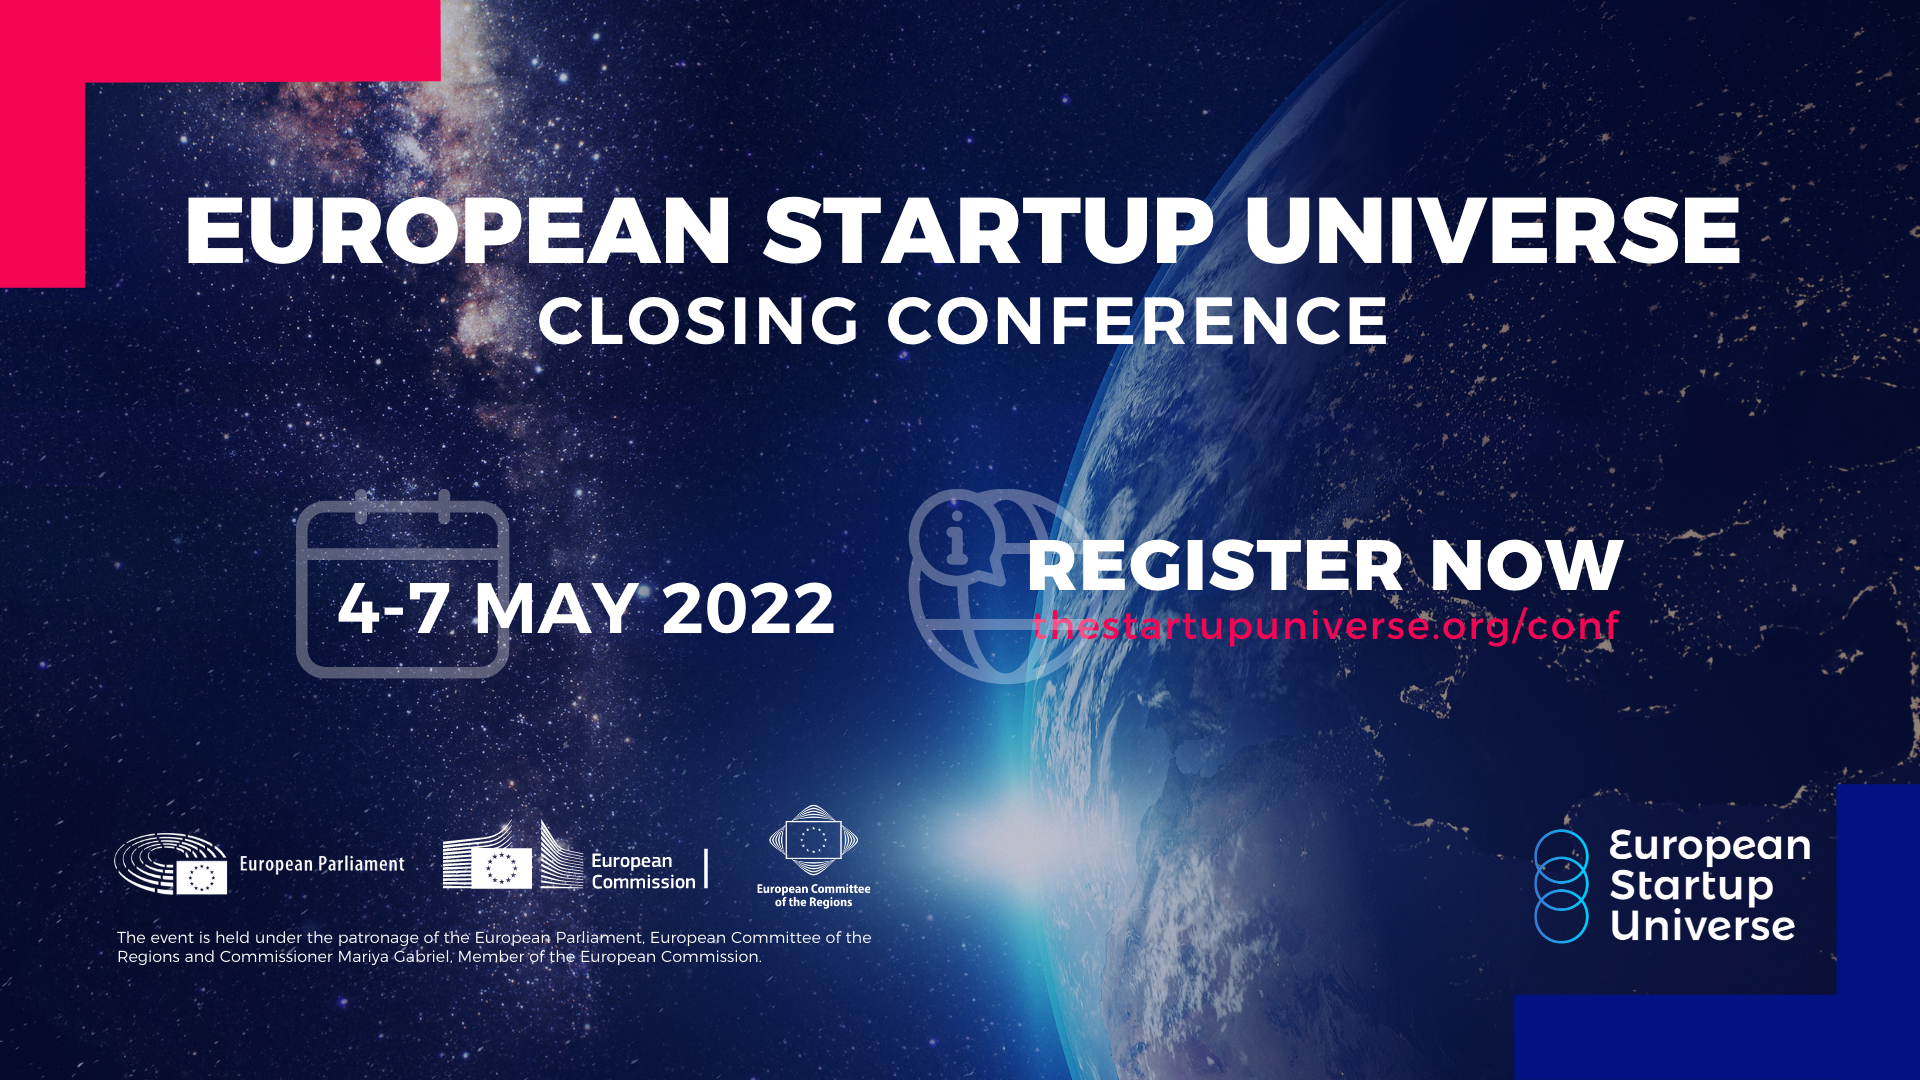 Απολογιστικό Δελτίο Τύπου “Closing Conference” European Startup Universe.